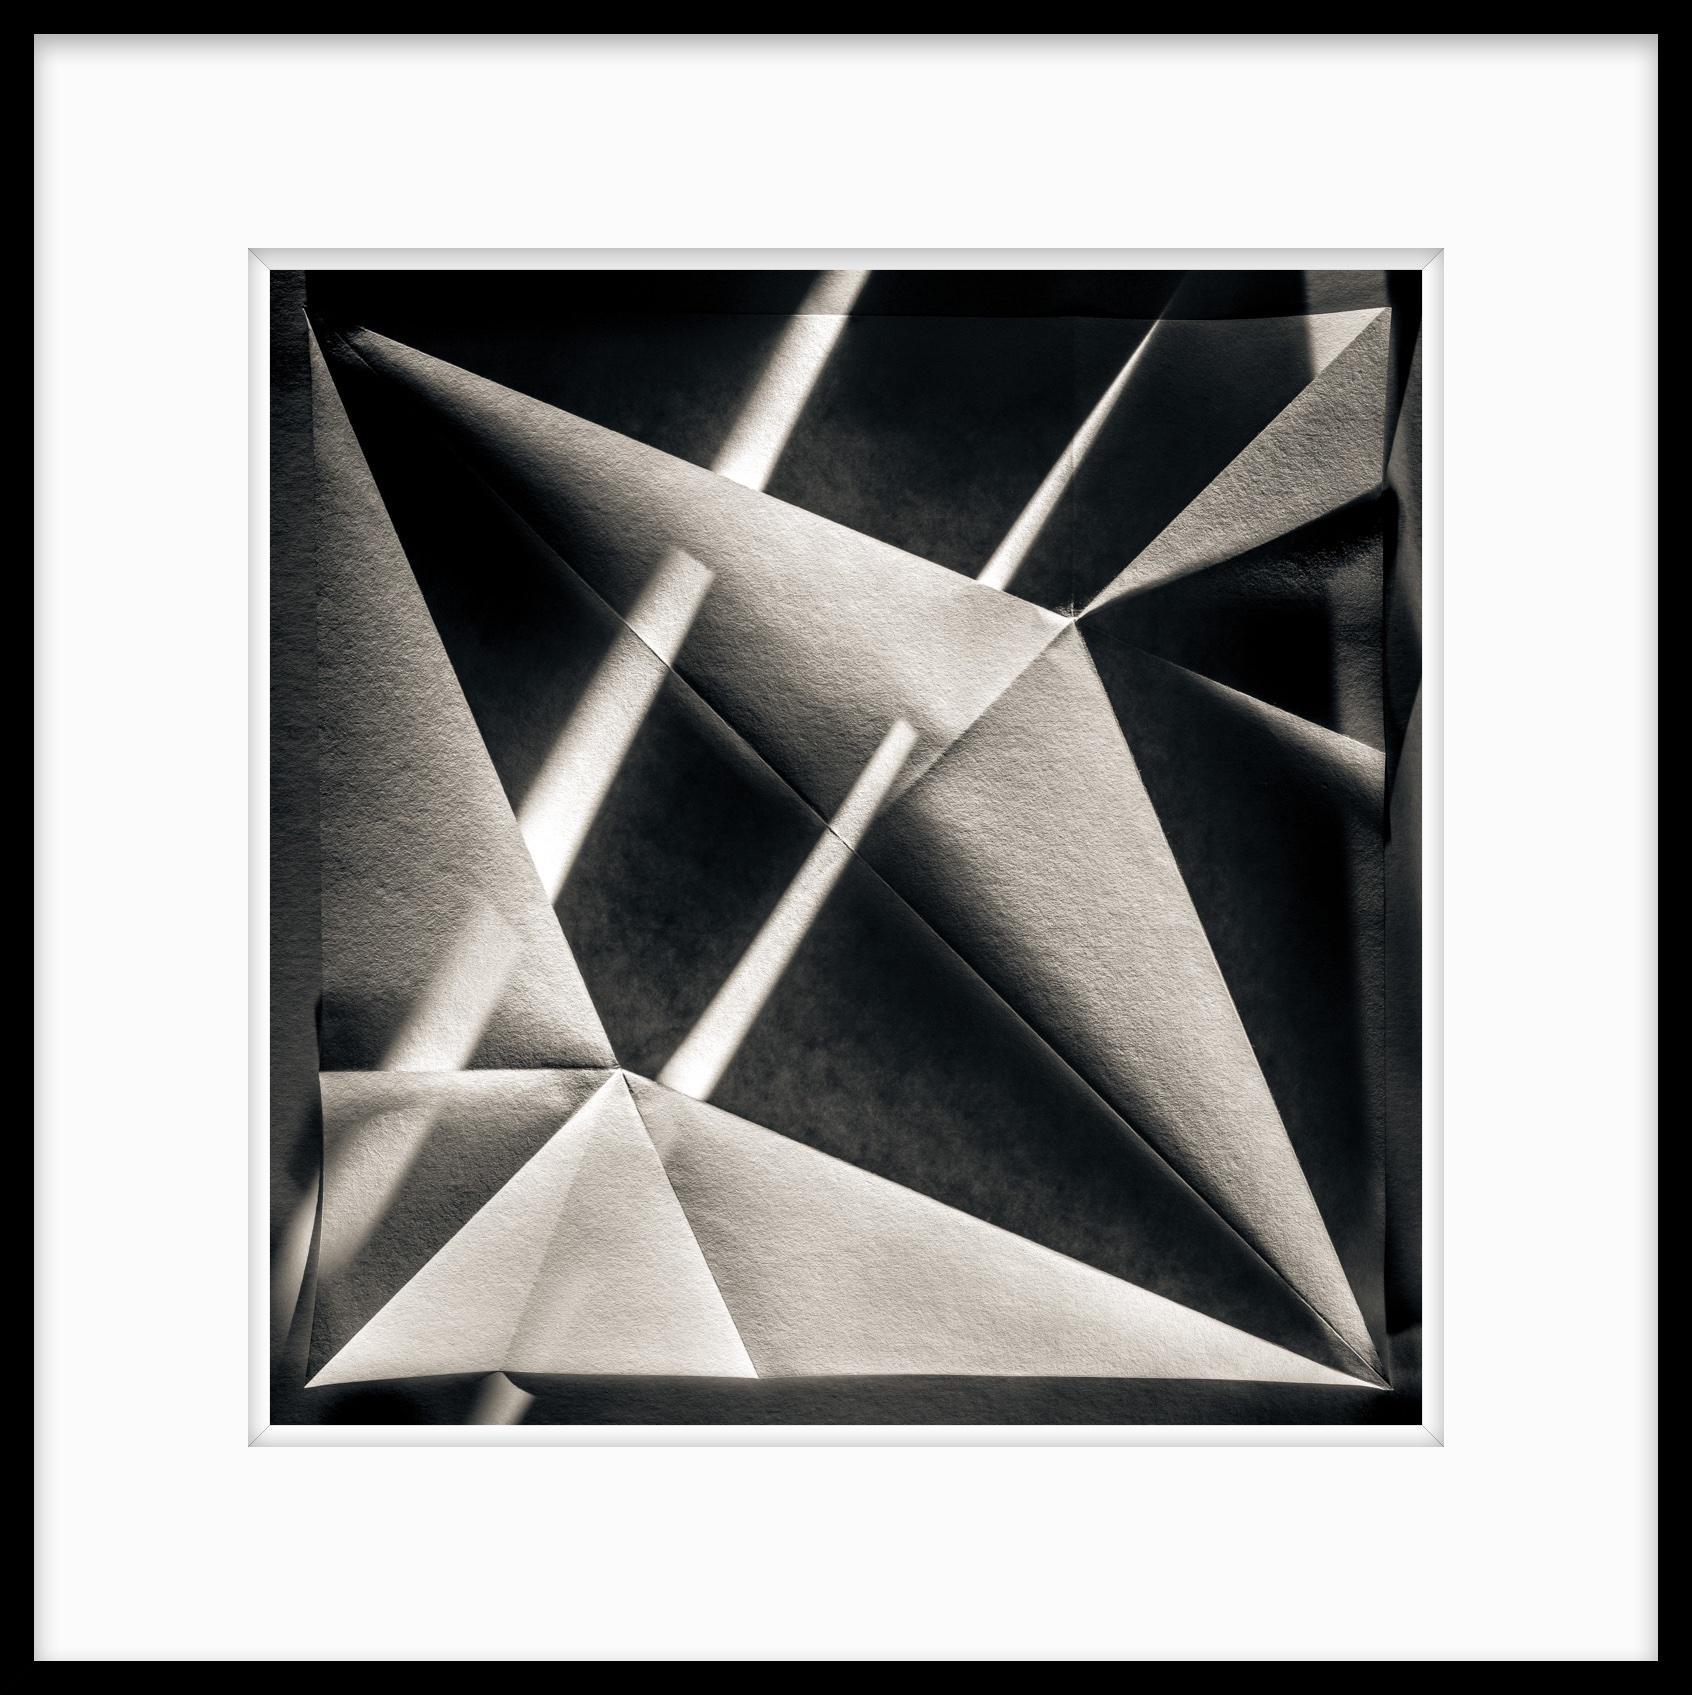 Schwarz-Weiß-Fotografie in limitierter Auflage mit Origami-Blatt #18  (Geometrische Abstraktion), Photograph, von Howard Lewis